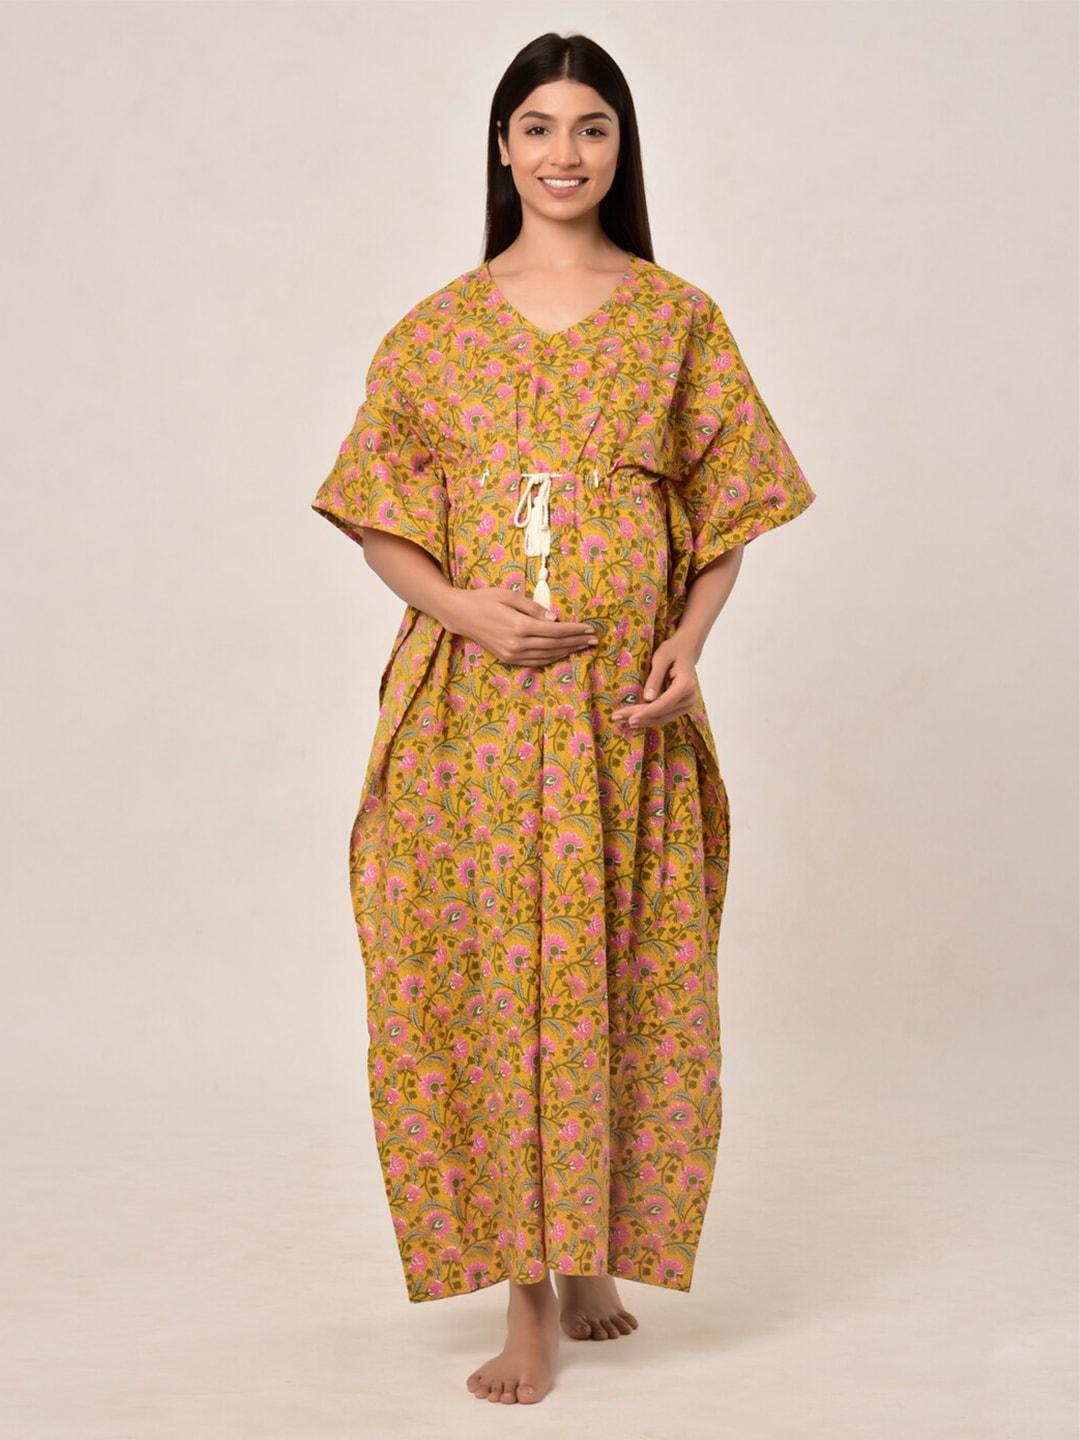 Ikk Kudi by Seerat Yellow Printed Maxi Nursing Kaftan Nightdress